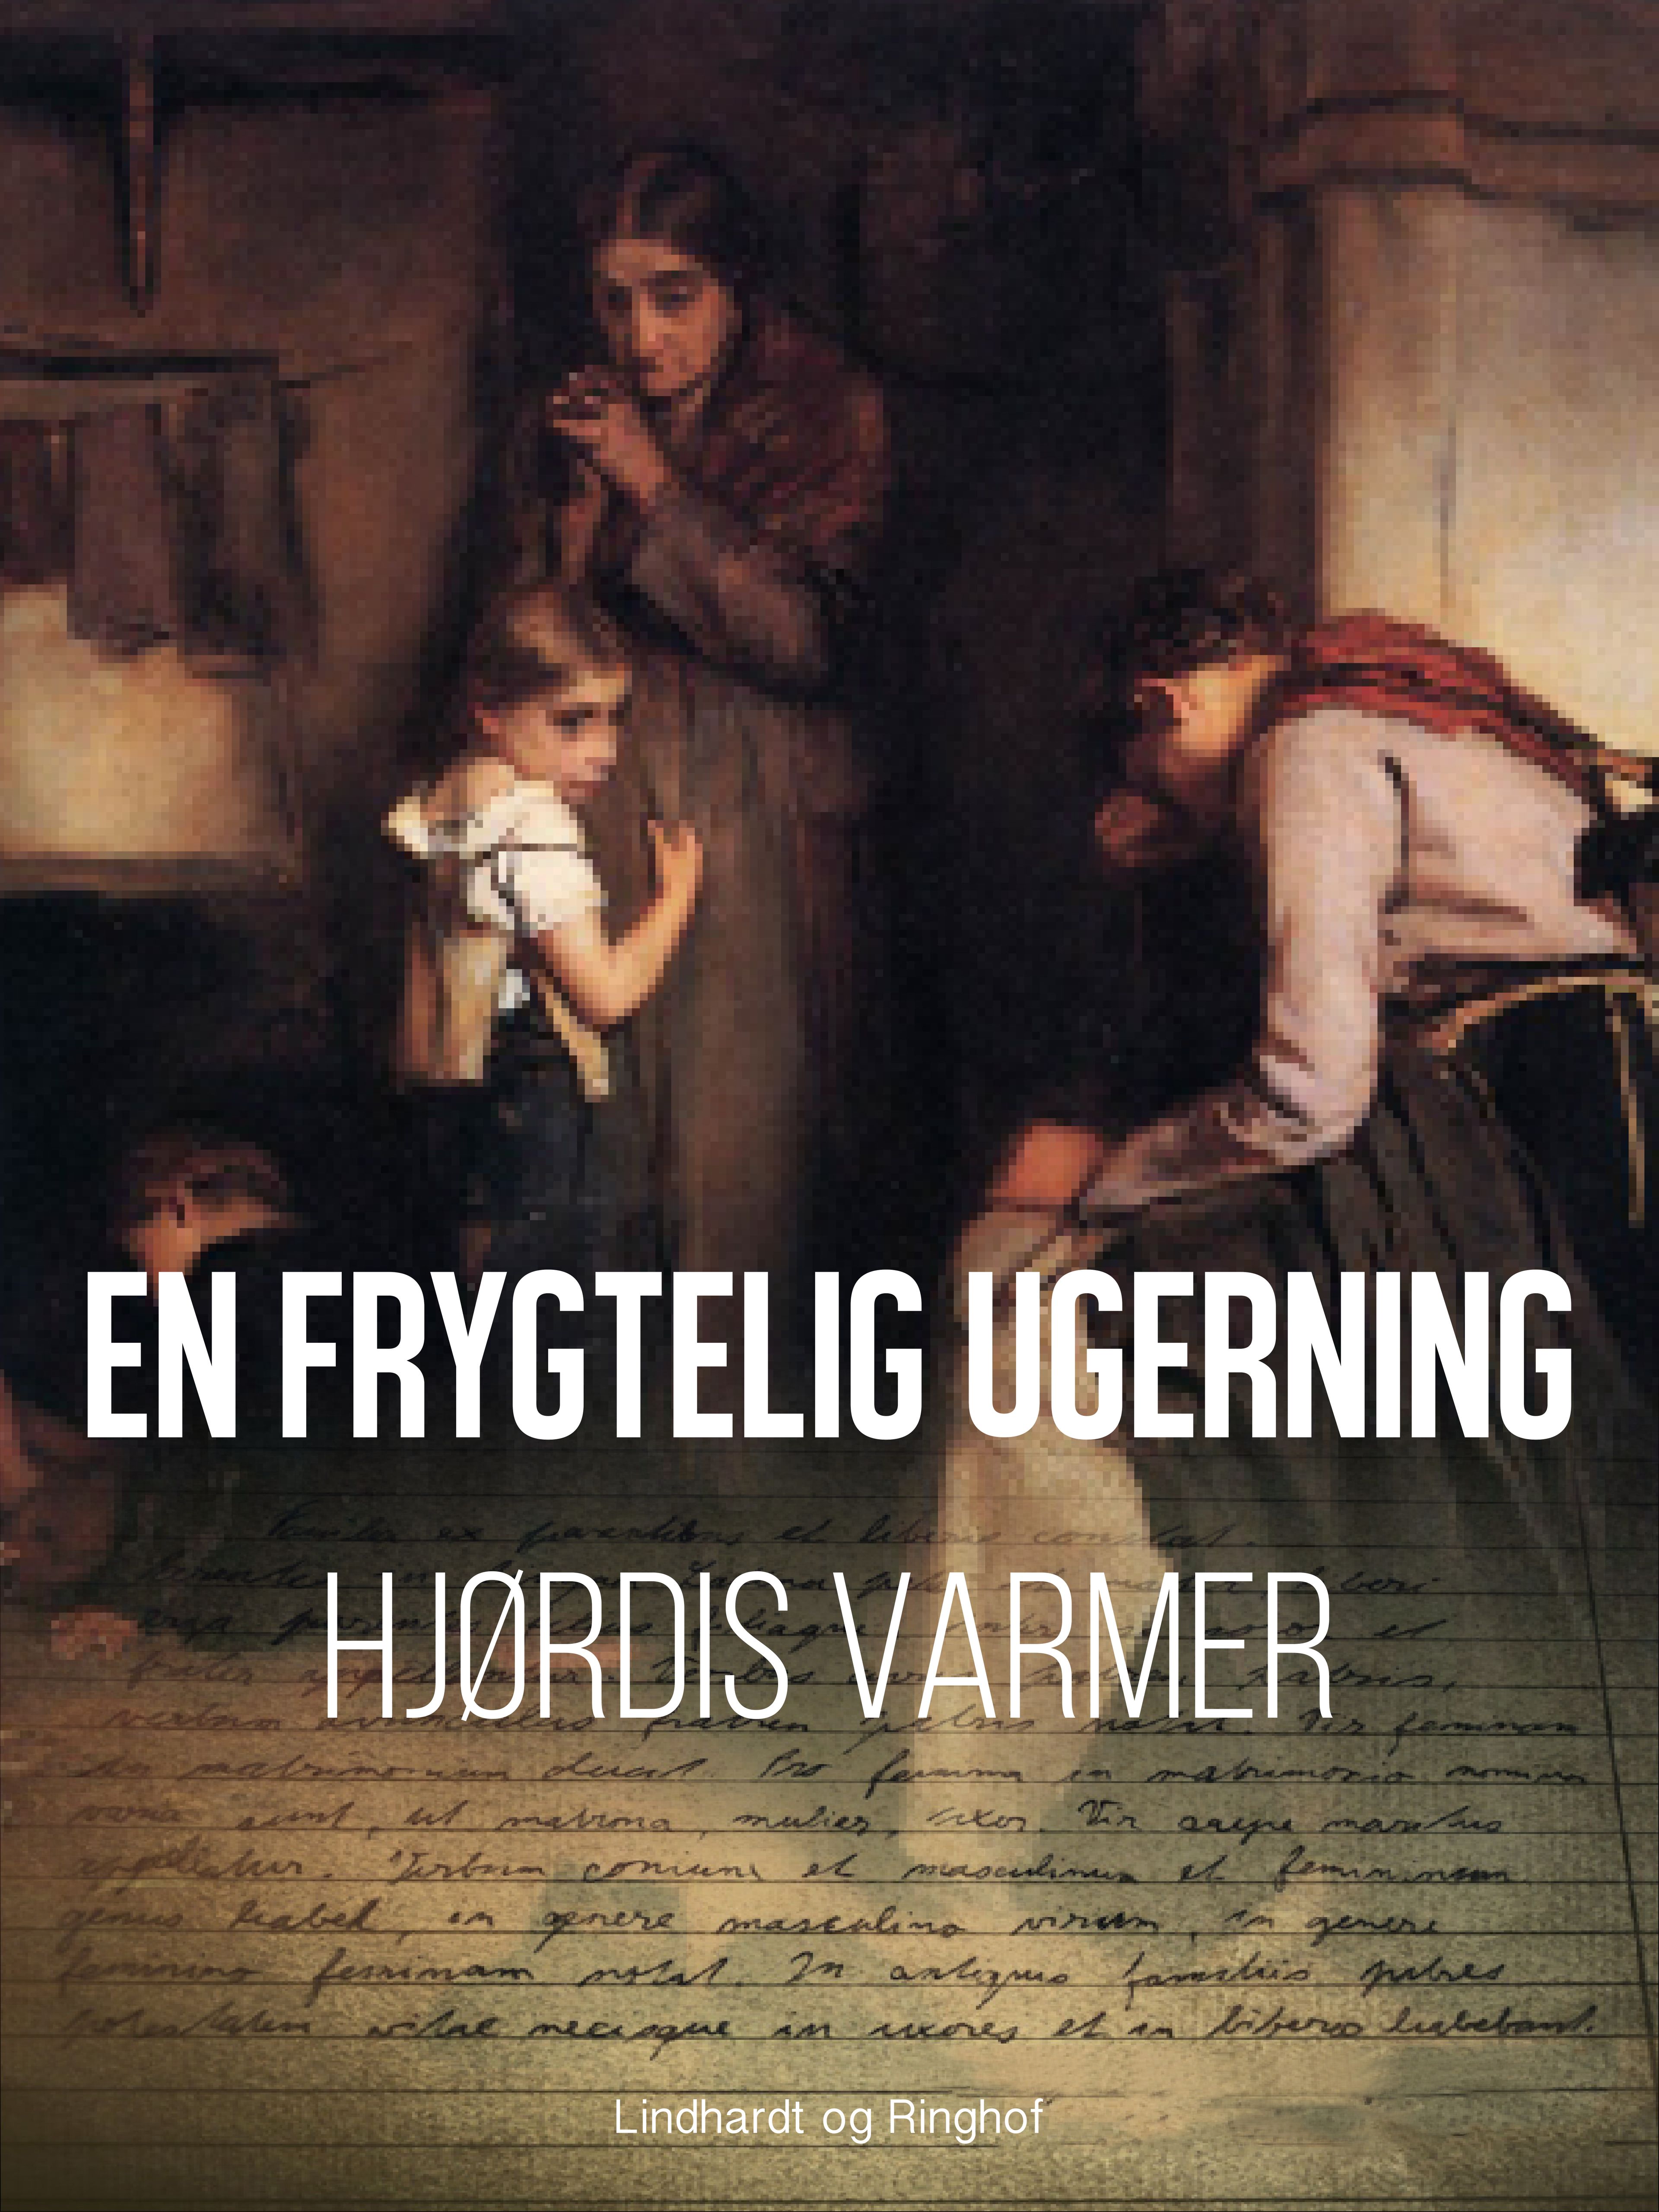 En frygtelig ugerning, ljudbok av Hjørdis Varmer